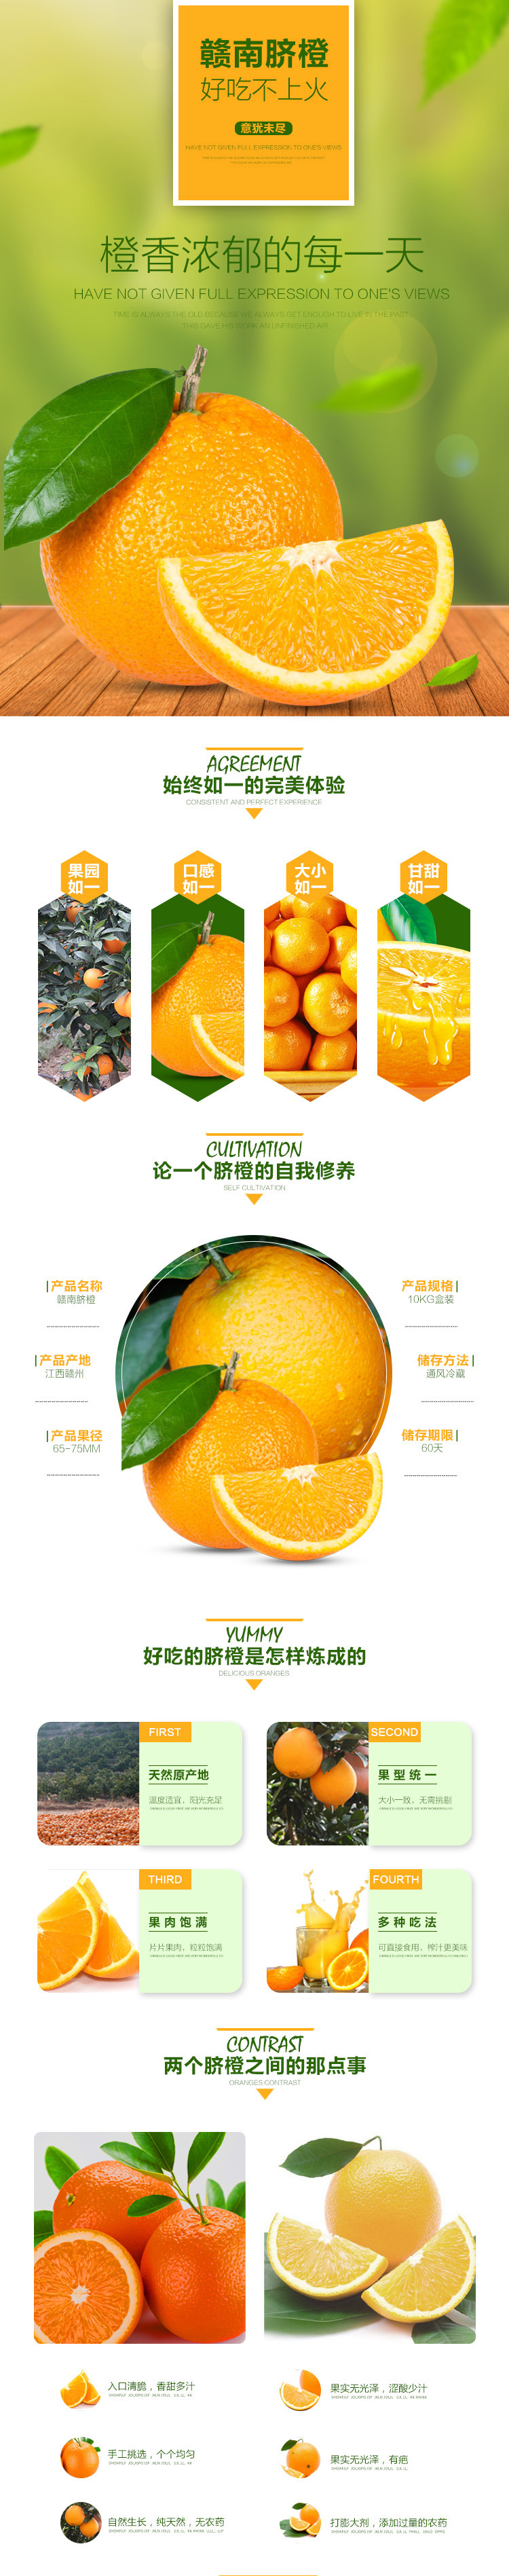 园丰脐橙品种介绍图片